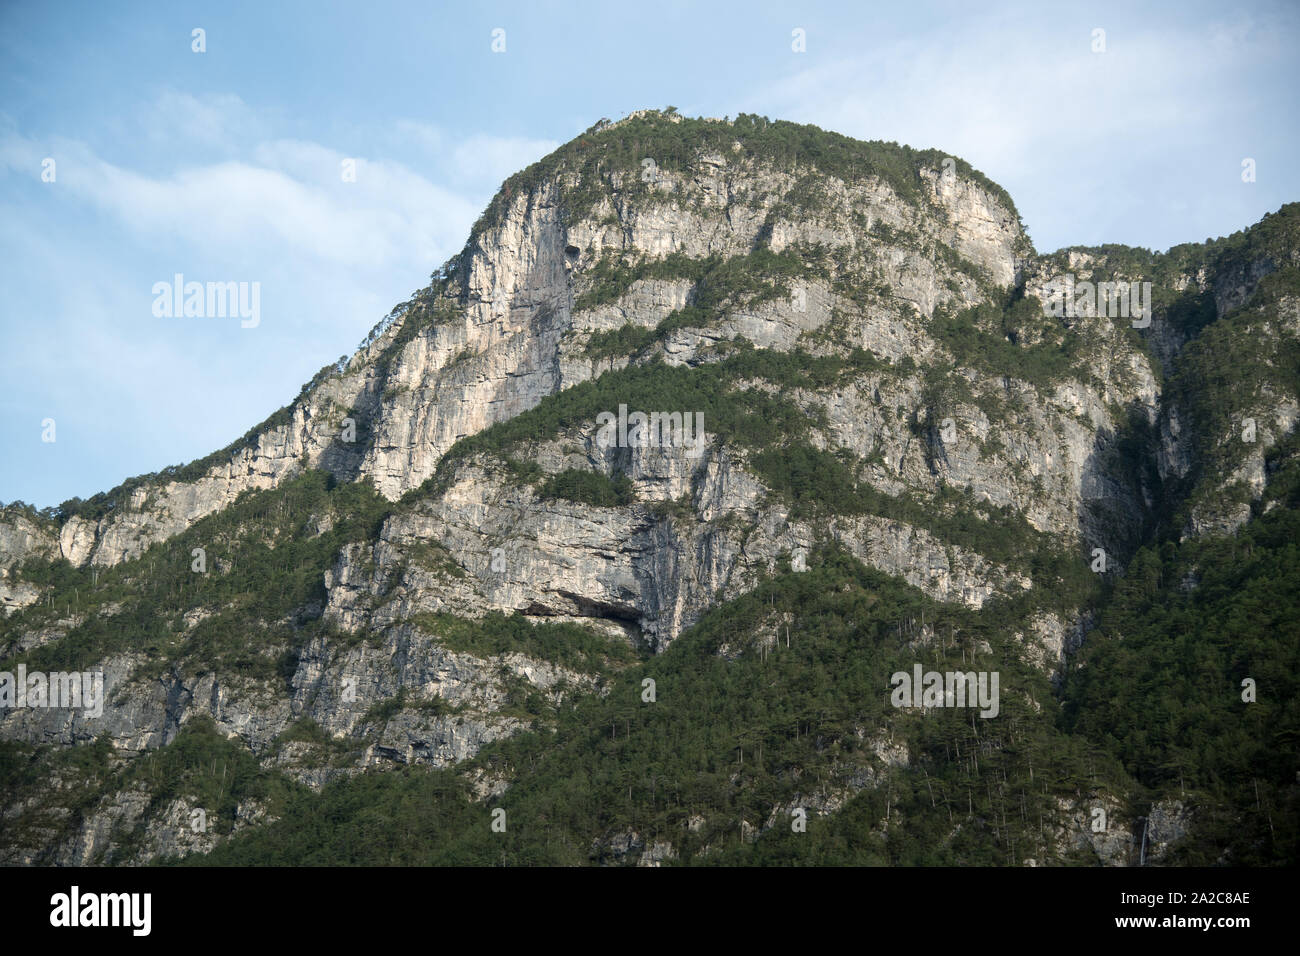 Karnischen Alpen von der Autobahn Alpe-Adria-A23 in der Region Friaul Julisch Venetien, Italien gesehen. 17.August 2019 © wojciech Strozyk/Alamy Stock Foto Stockfoto